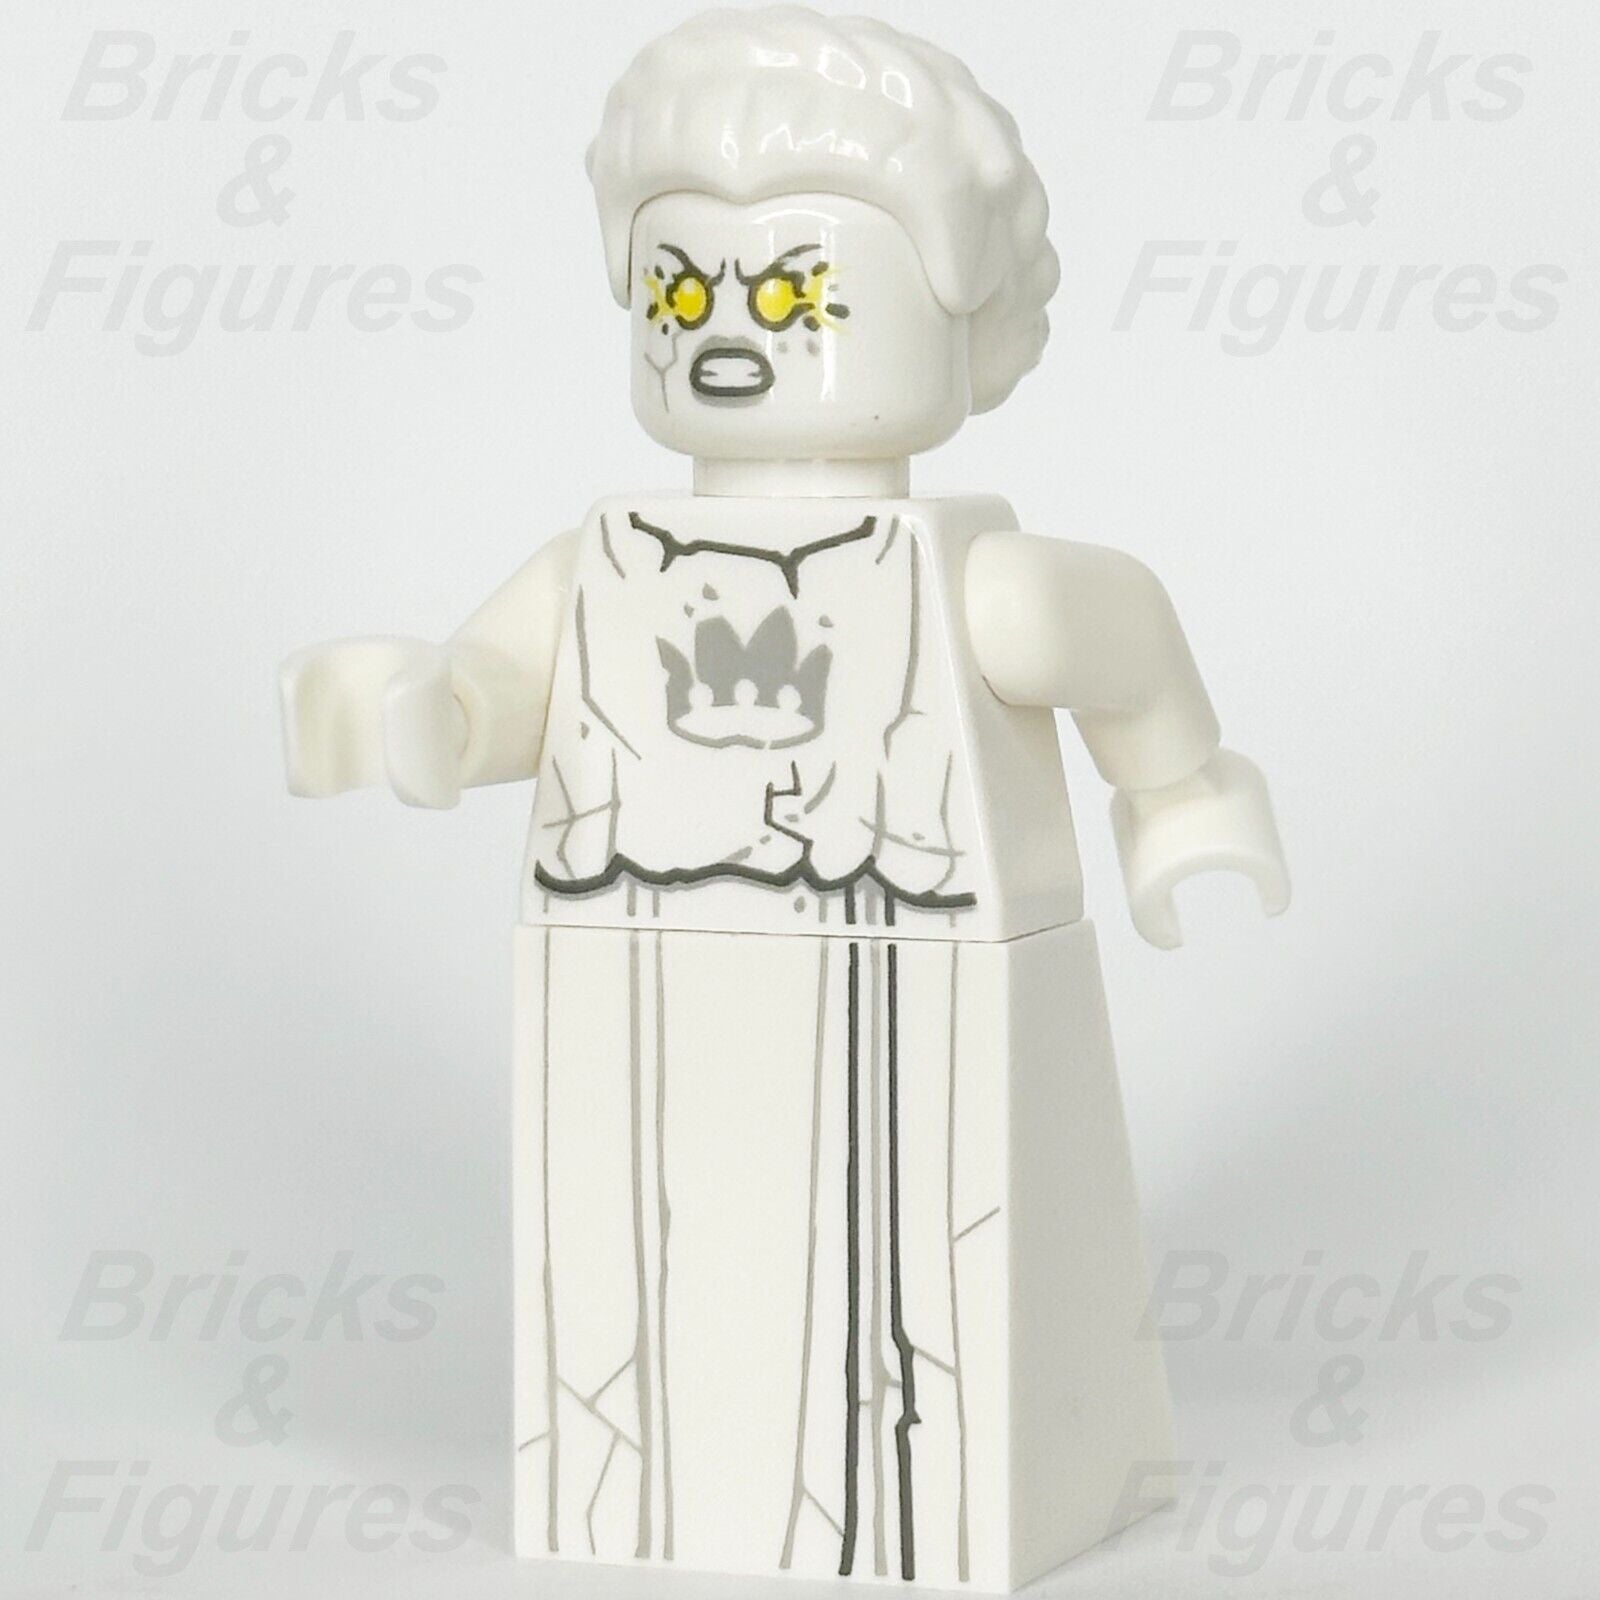 LEGO Nexo Knights White Stone Statue Minifigure Yellow Eyes Crown 70357 nex121